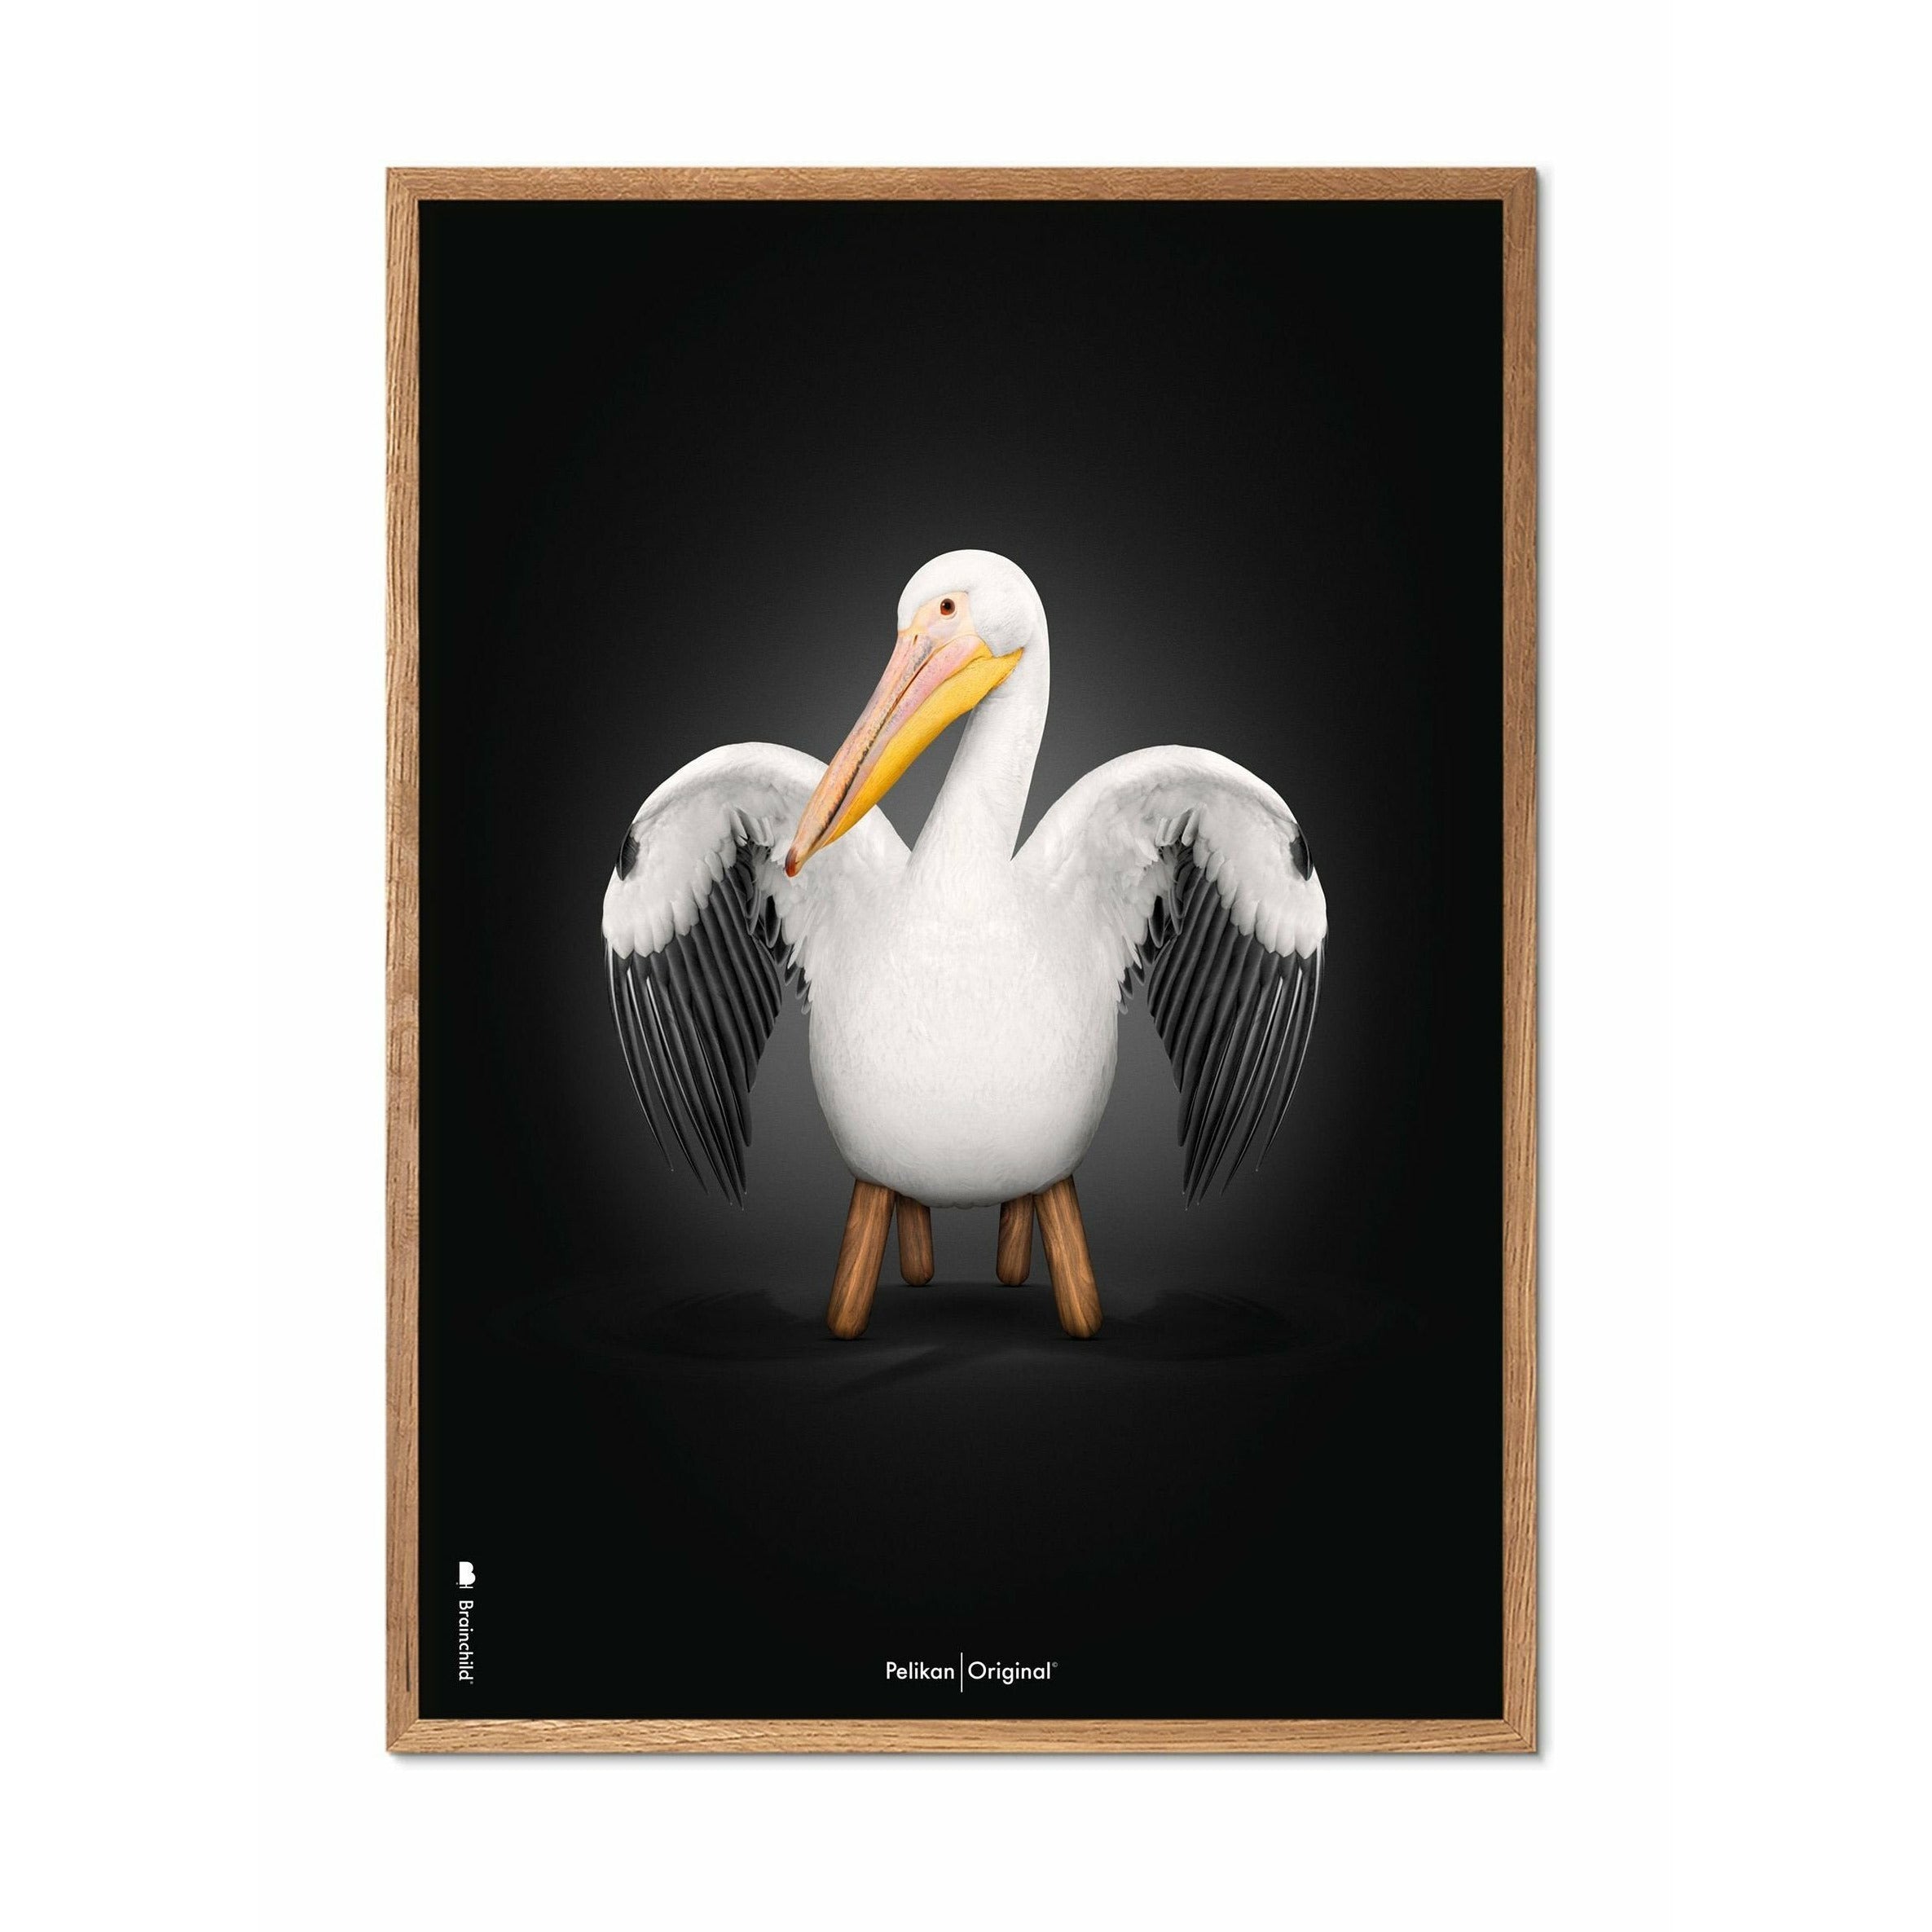 Brainchild Pelikan Classic Poster, Rahmen aus hellem Holz 30x40 Cm, schwarzer Hintergrund